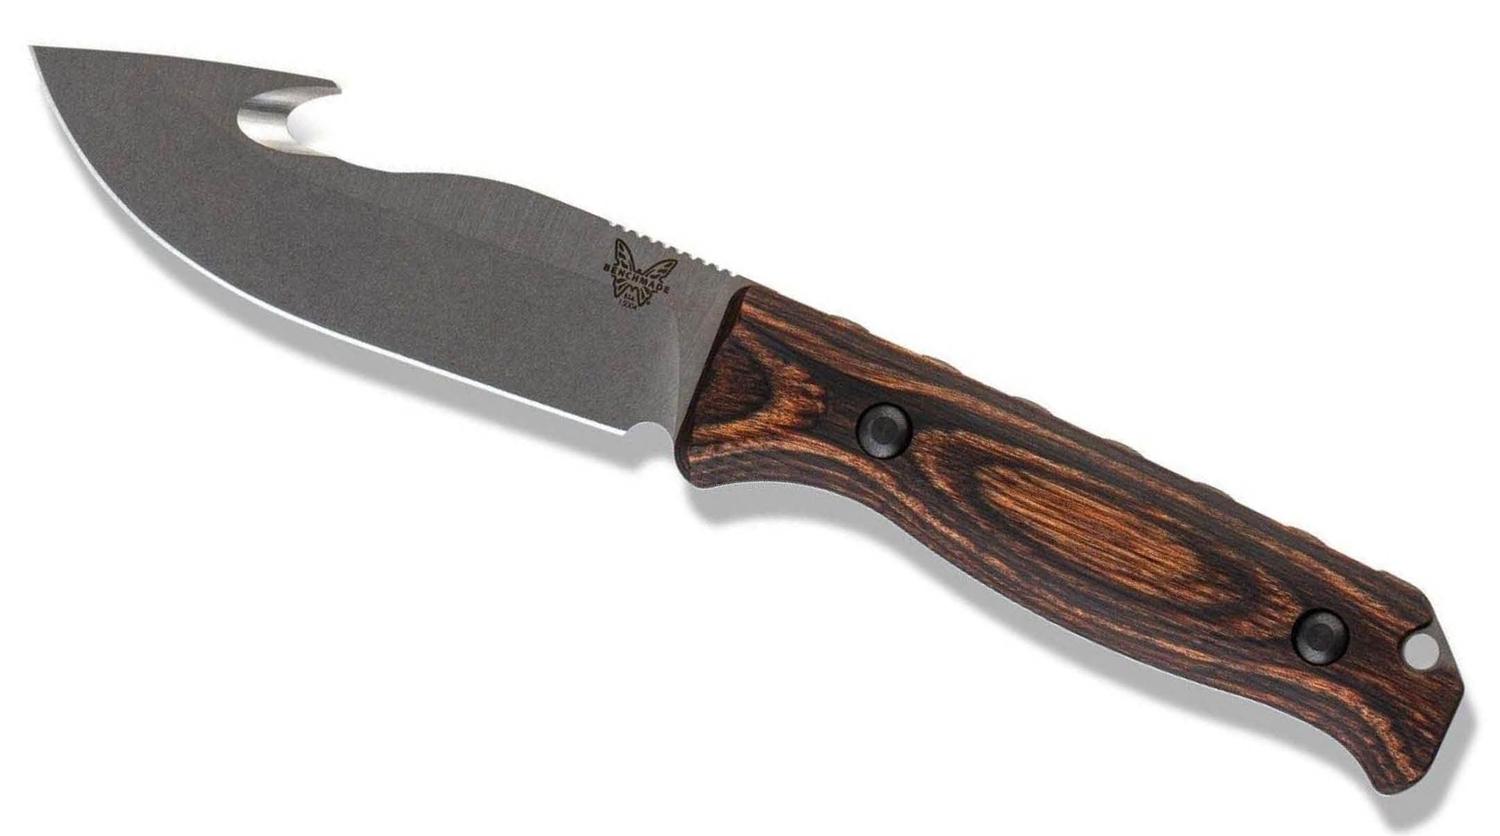  15004 Saddle Mountain Skinner Fixed Blade Knife 4.3in S30v Satin